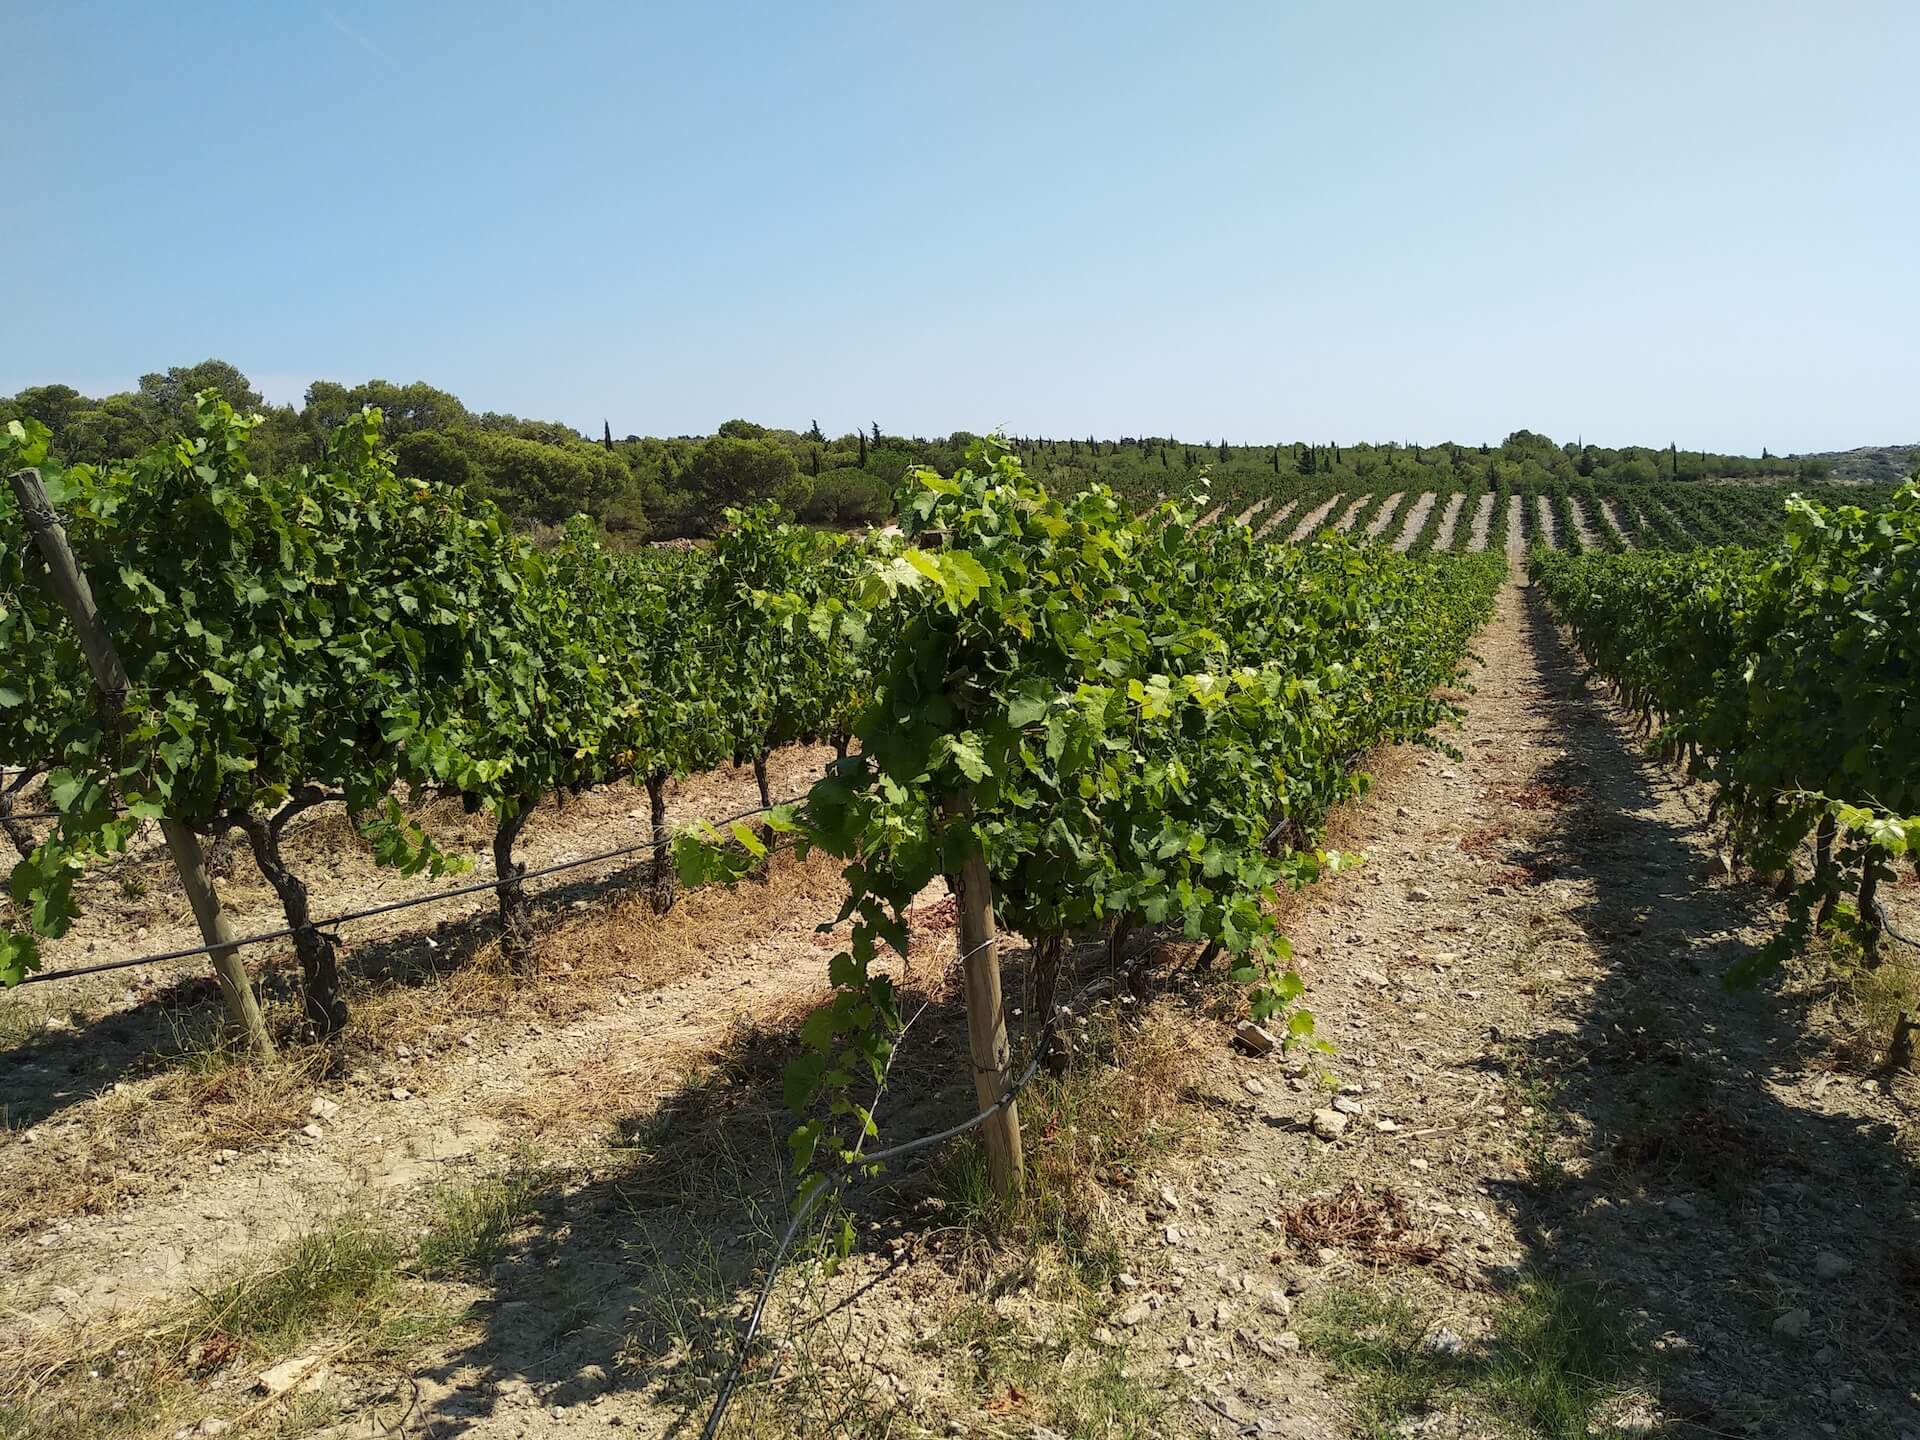 Wijngaard in de omgeving van Narbonne.